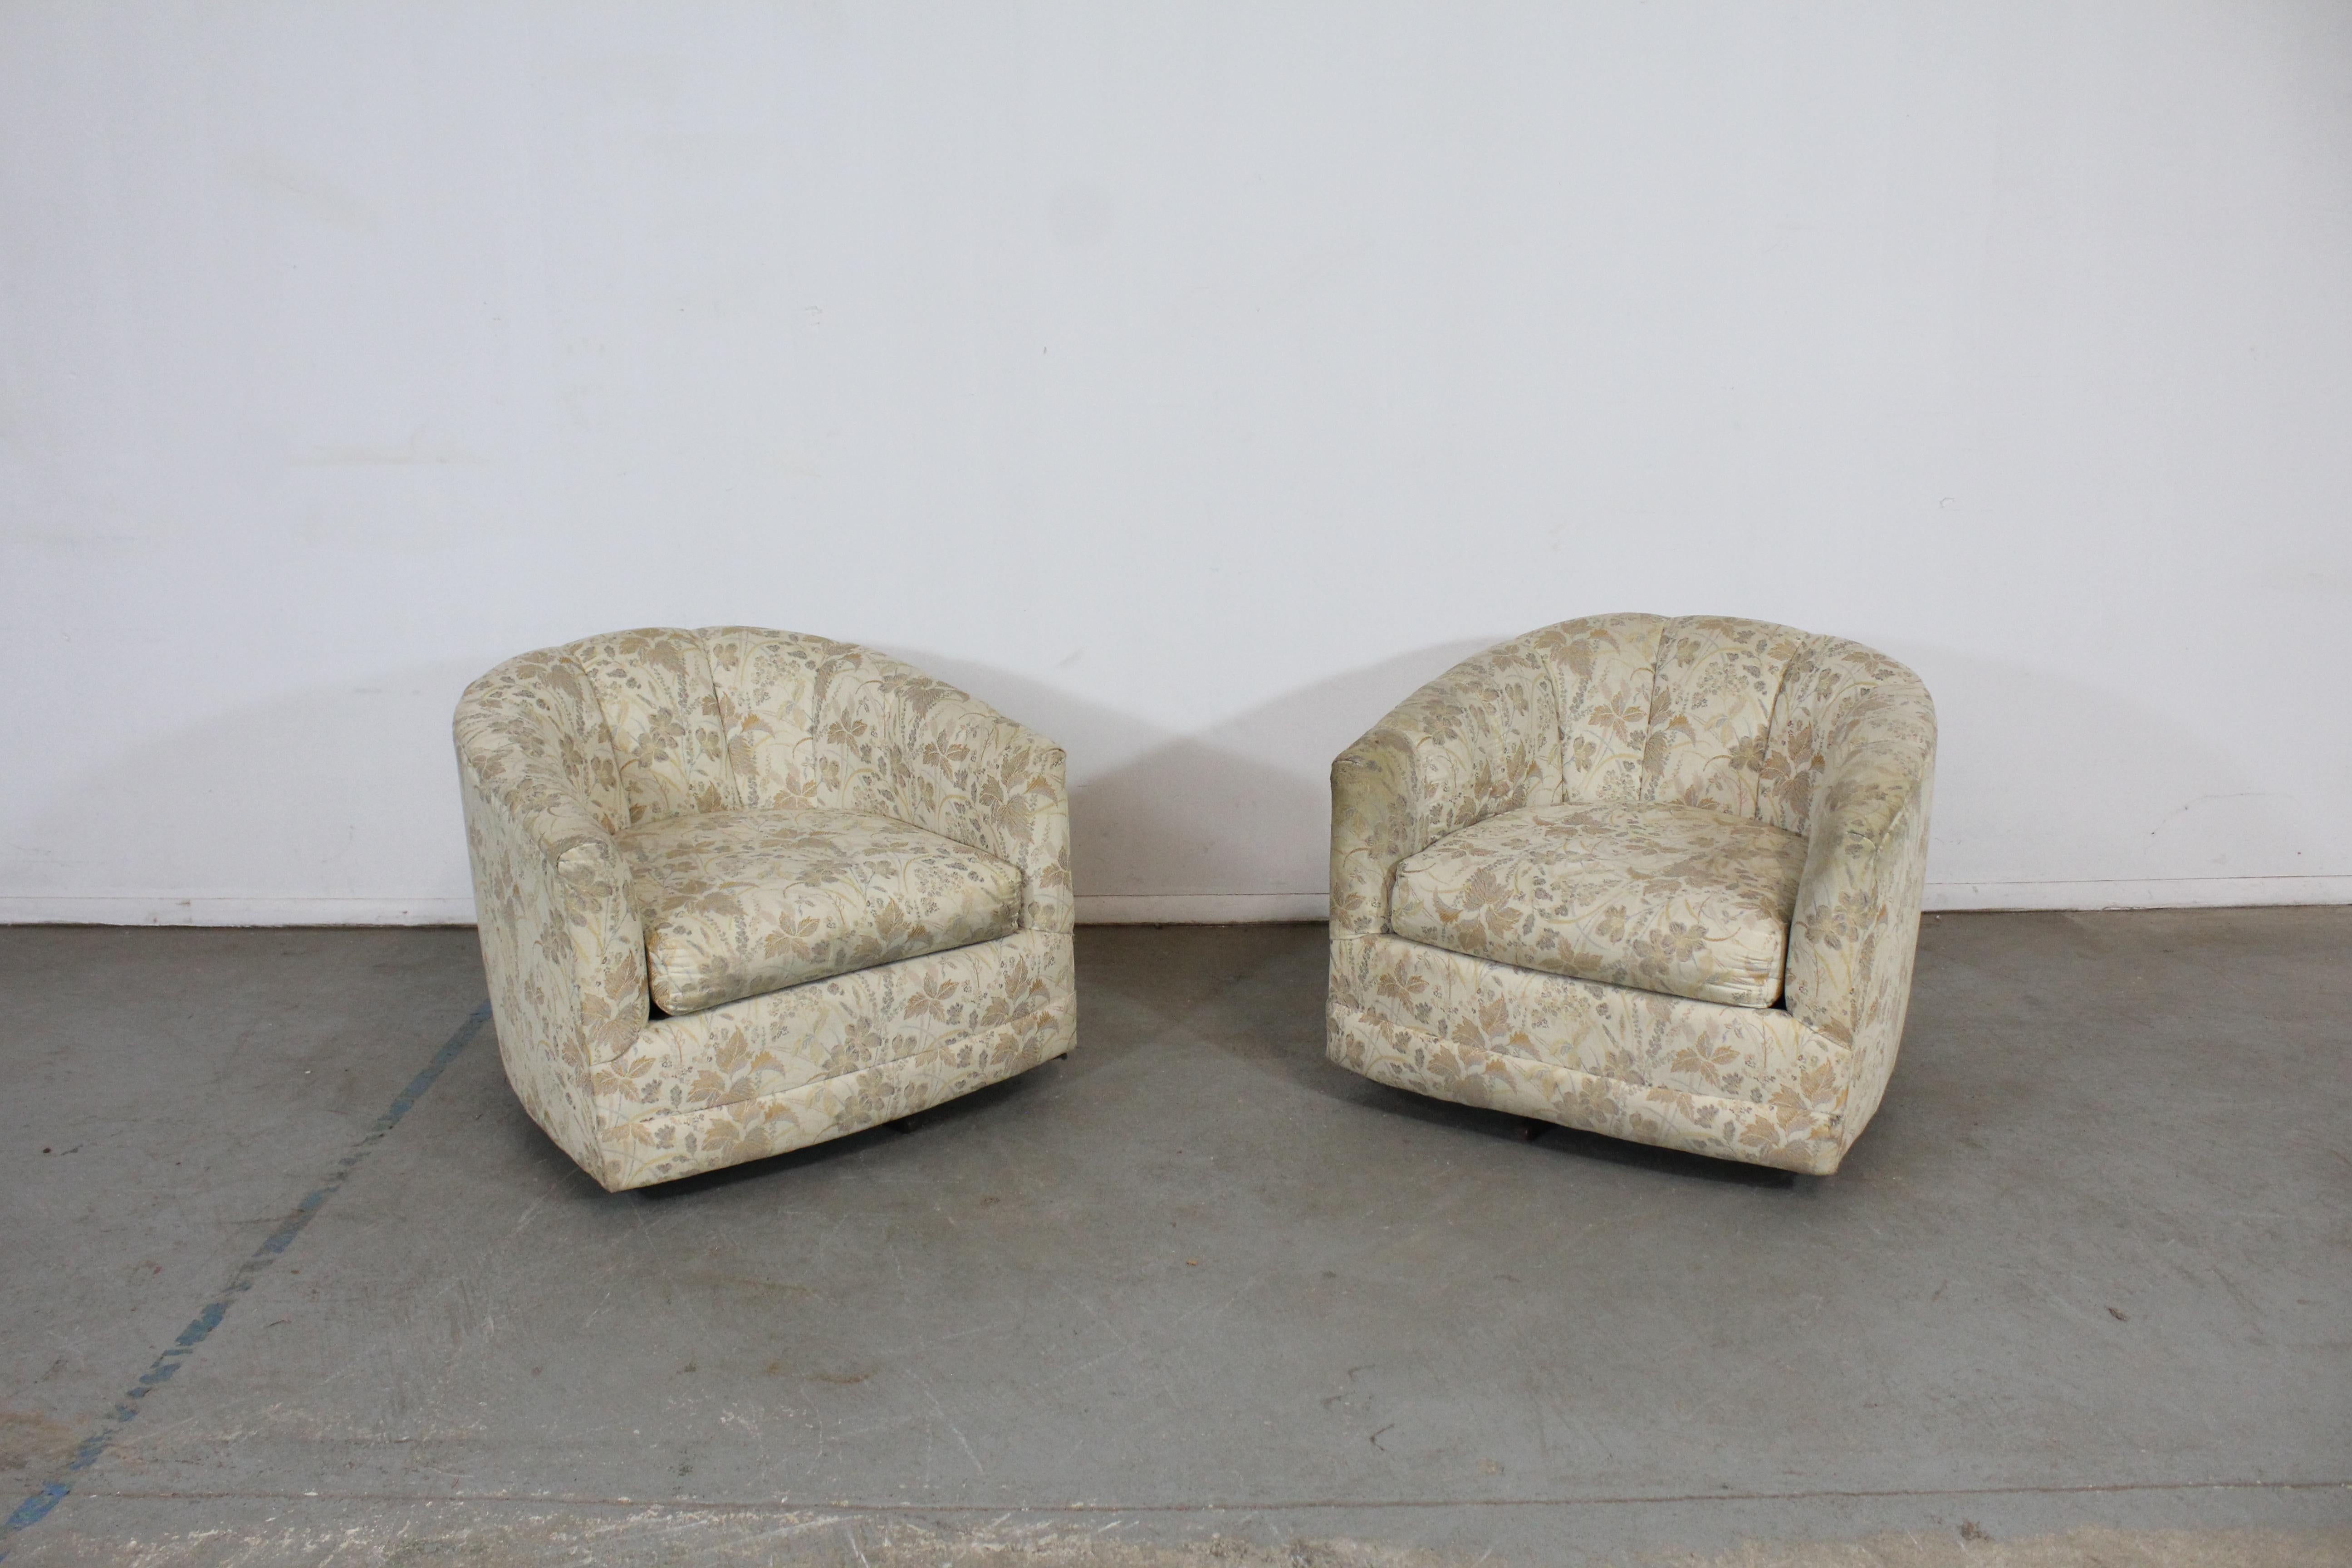 Paar Mid-Century Modern Barrel back swivel club chairs

Angeboten wird ein Paar von Vintage Mid-Century Modern Stil Drehstühle. Diese Stühle haben eine runde Rückenlehne und ein Metallgestell. Wir wissen nicht genau, wie alt sie sind, aber wir